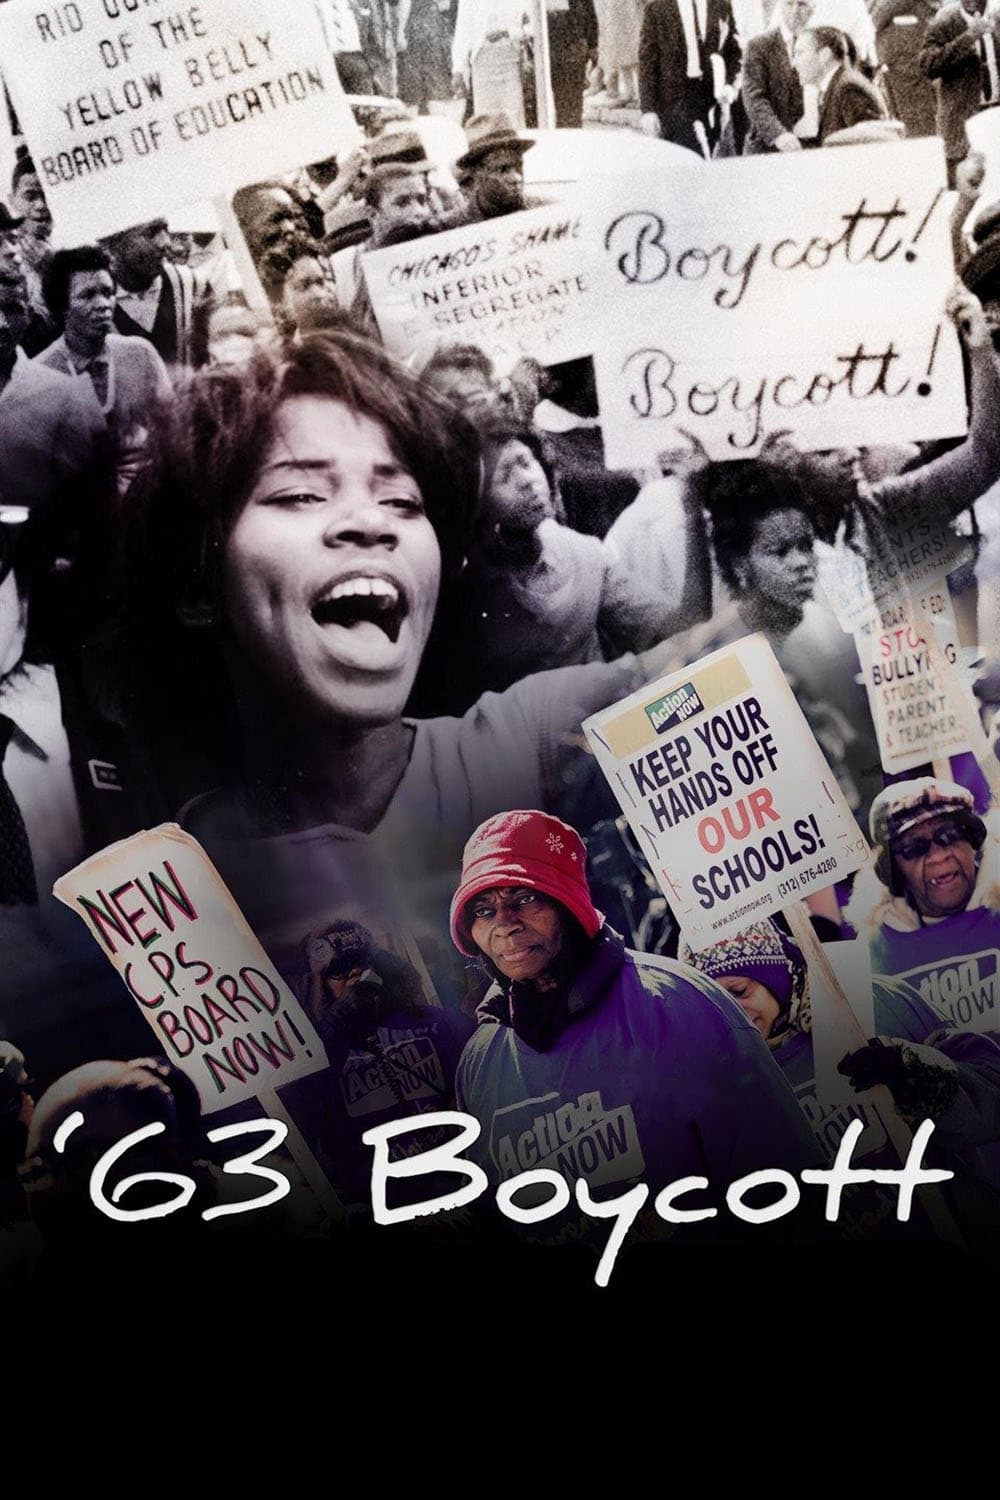 '63 Boycott